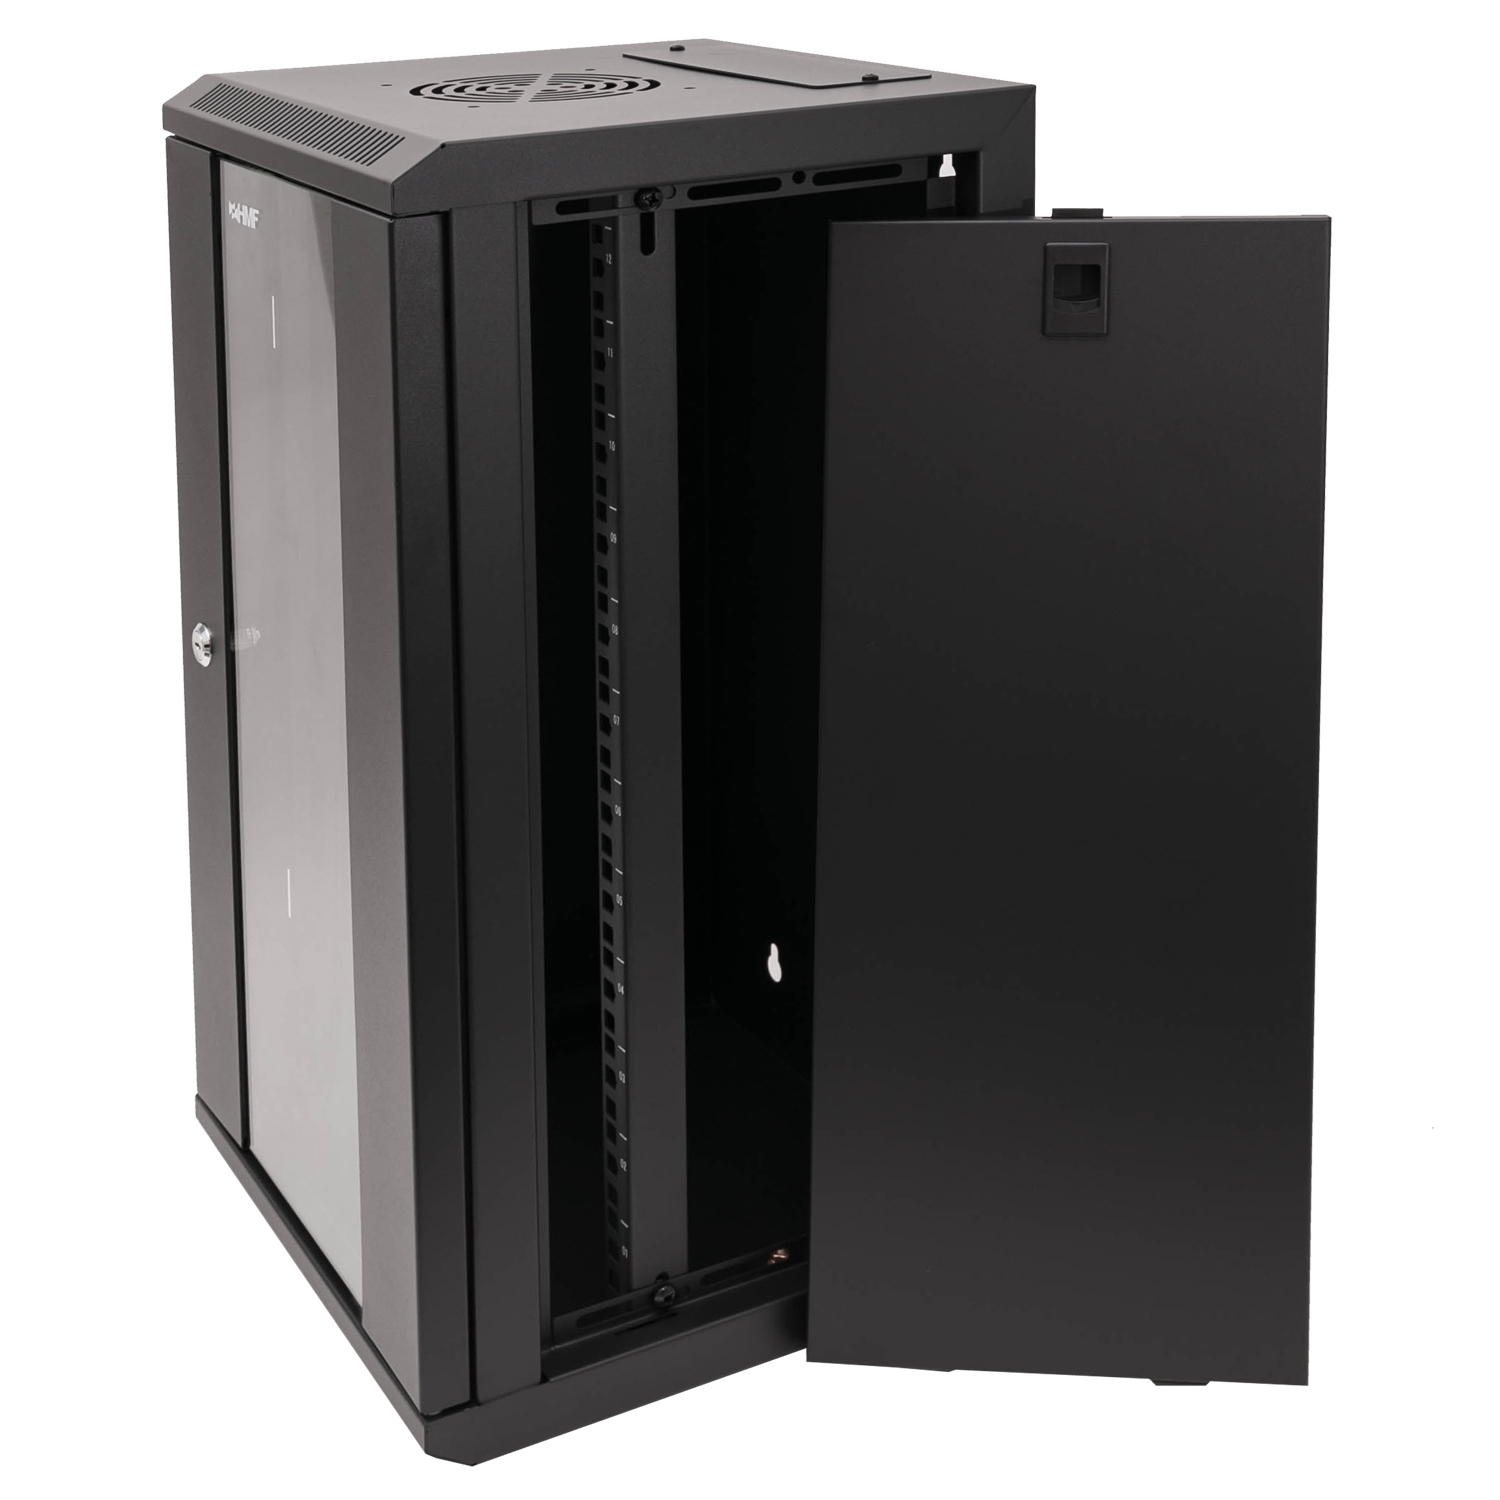 10 Zoll Serverschrank mit 12 Höheneinheiten von HMF mit 31,2 cm Breite in Schwarz